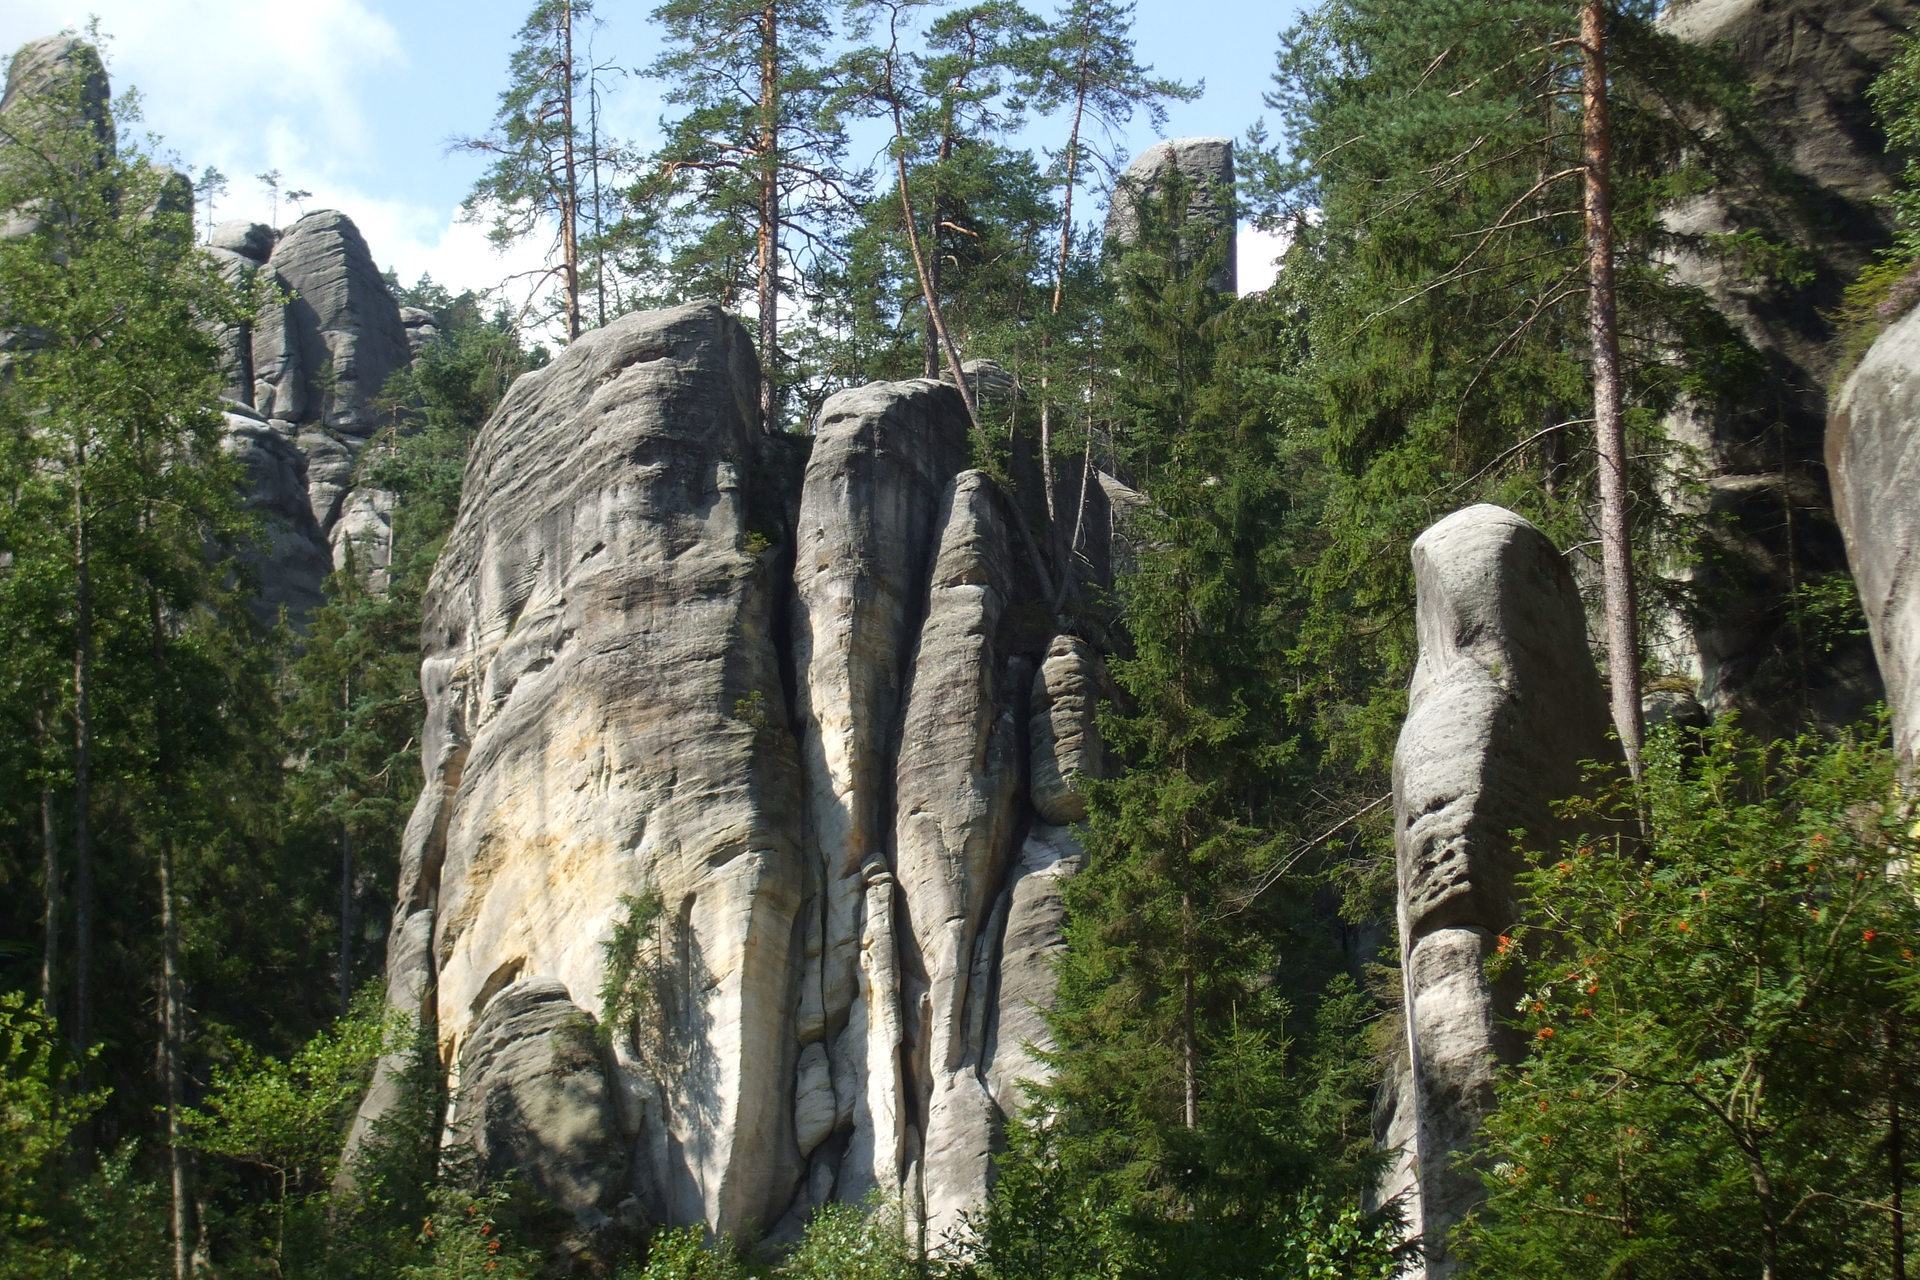 Fotografia prezentuje wysokie skały Gór Stołowych o płaskich szczytach, pomiędzy którymi rosną drzewa iglaste.